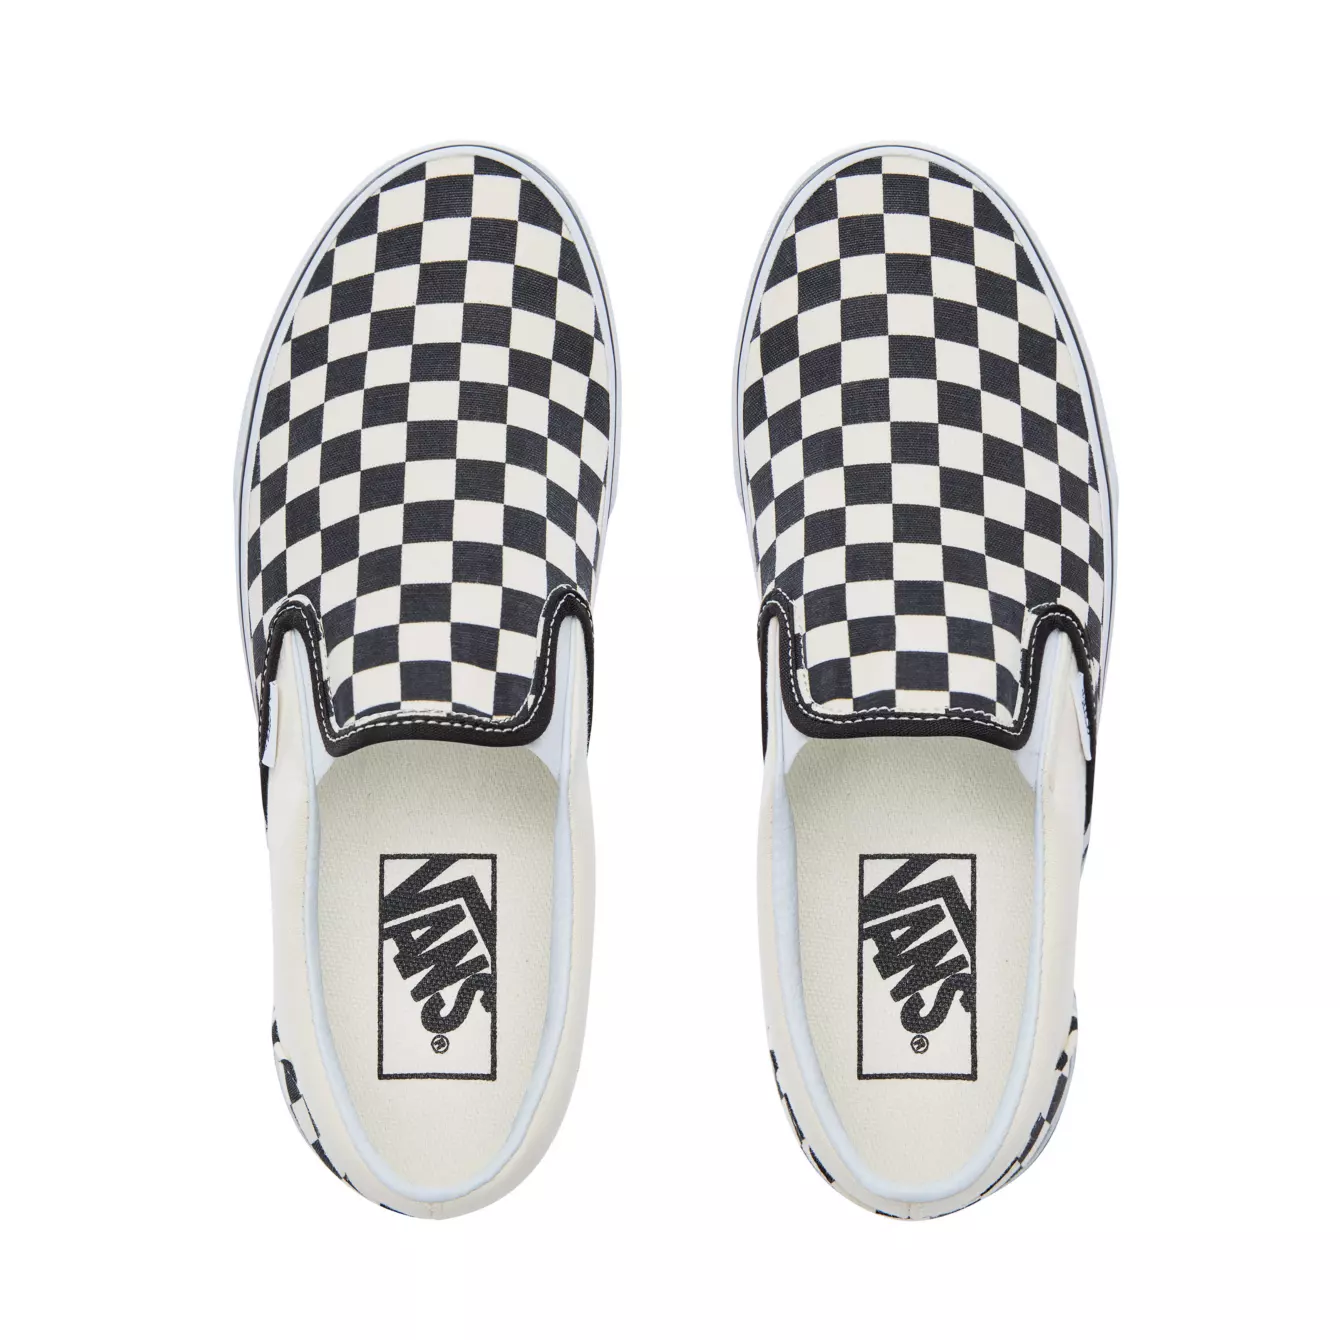 Vans Slip-on Checkerboard, Sneakers Homme, Vans